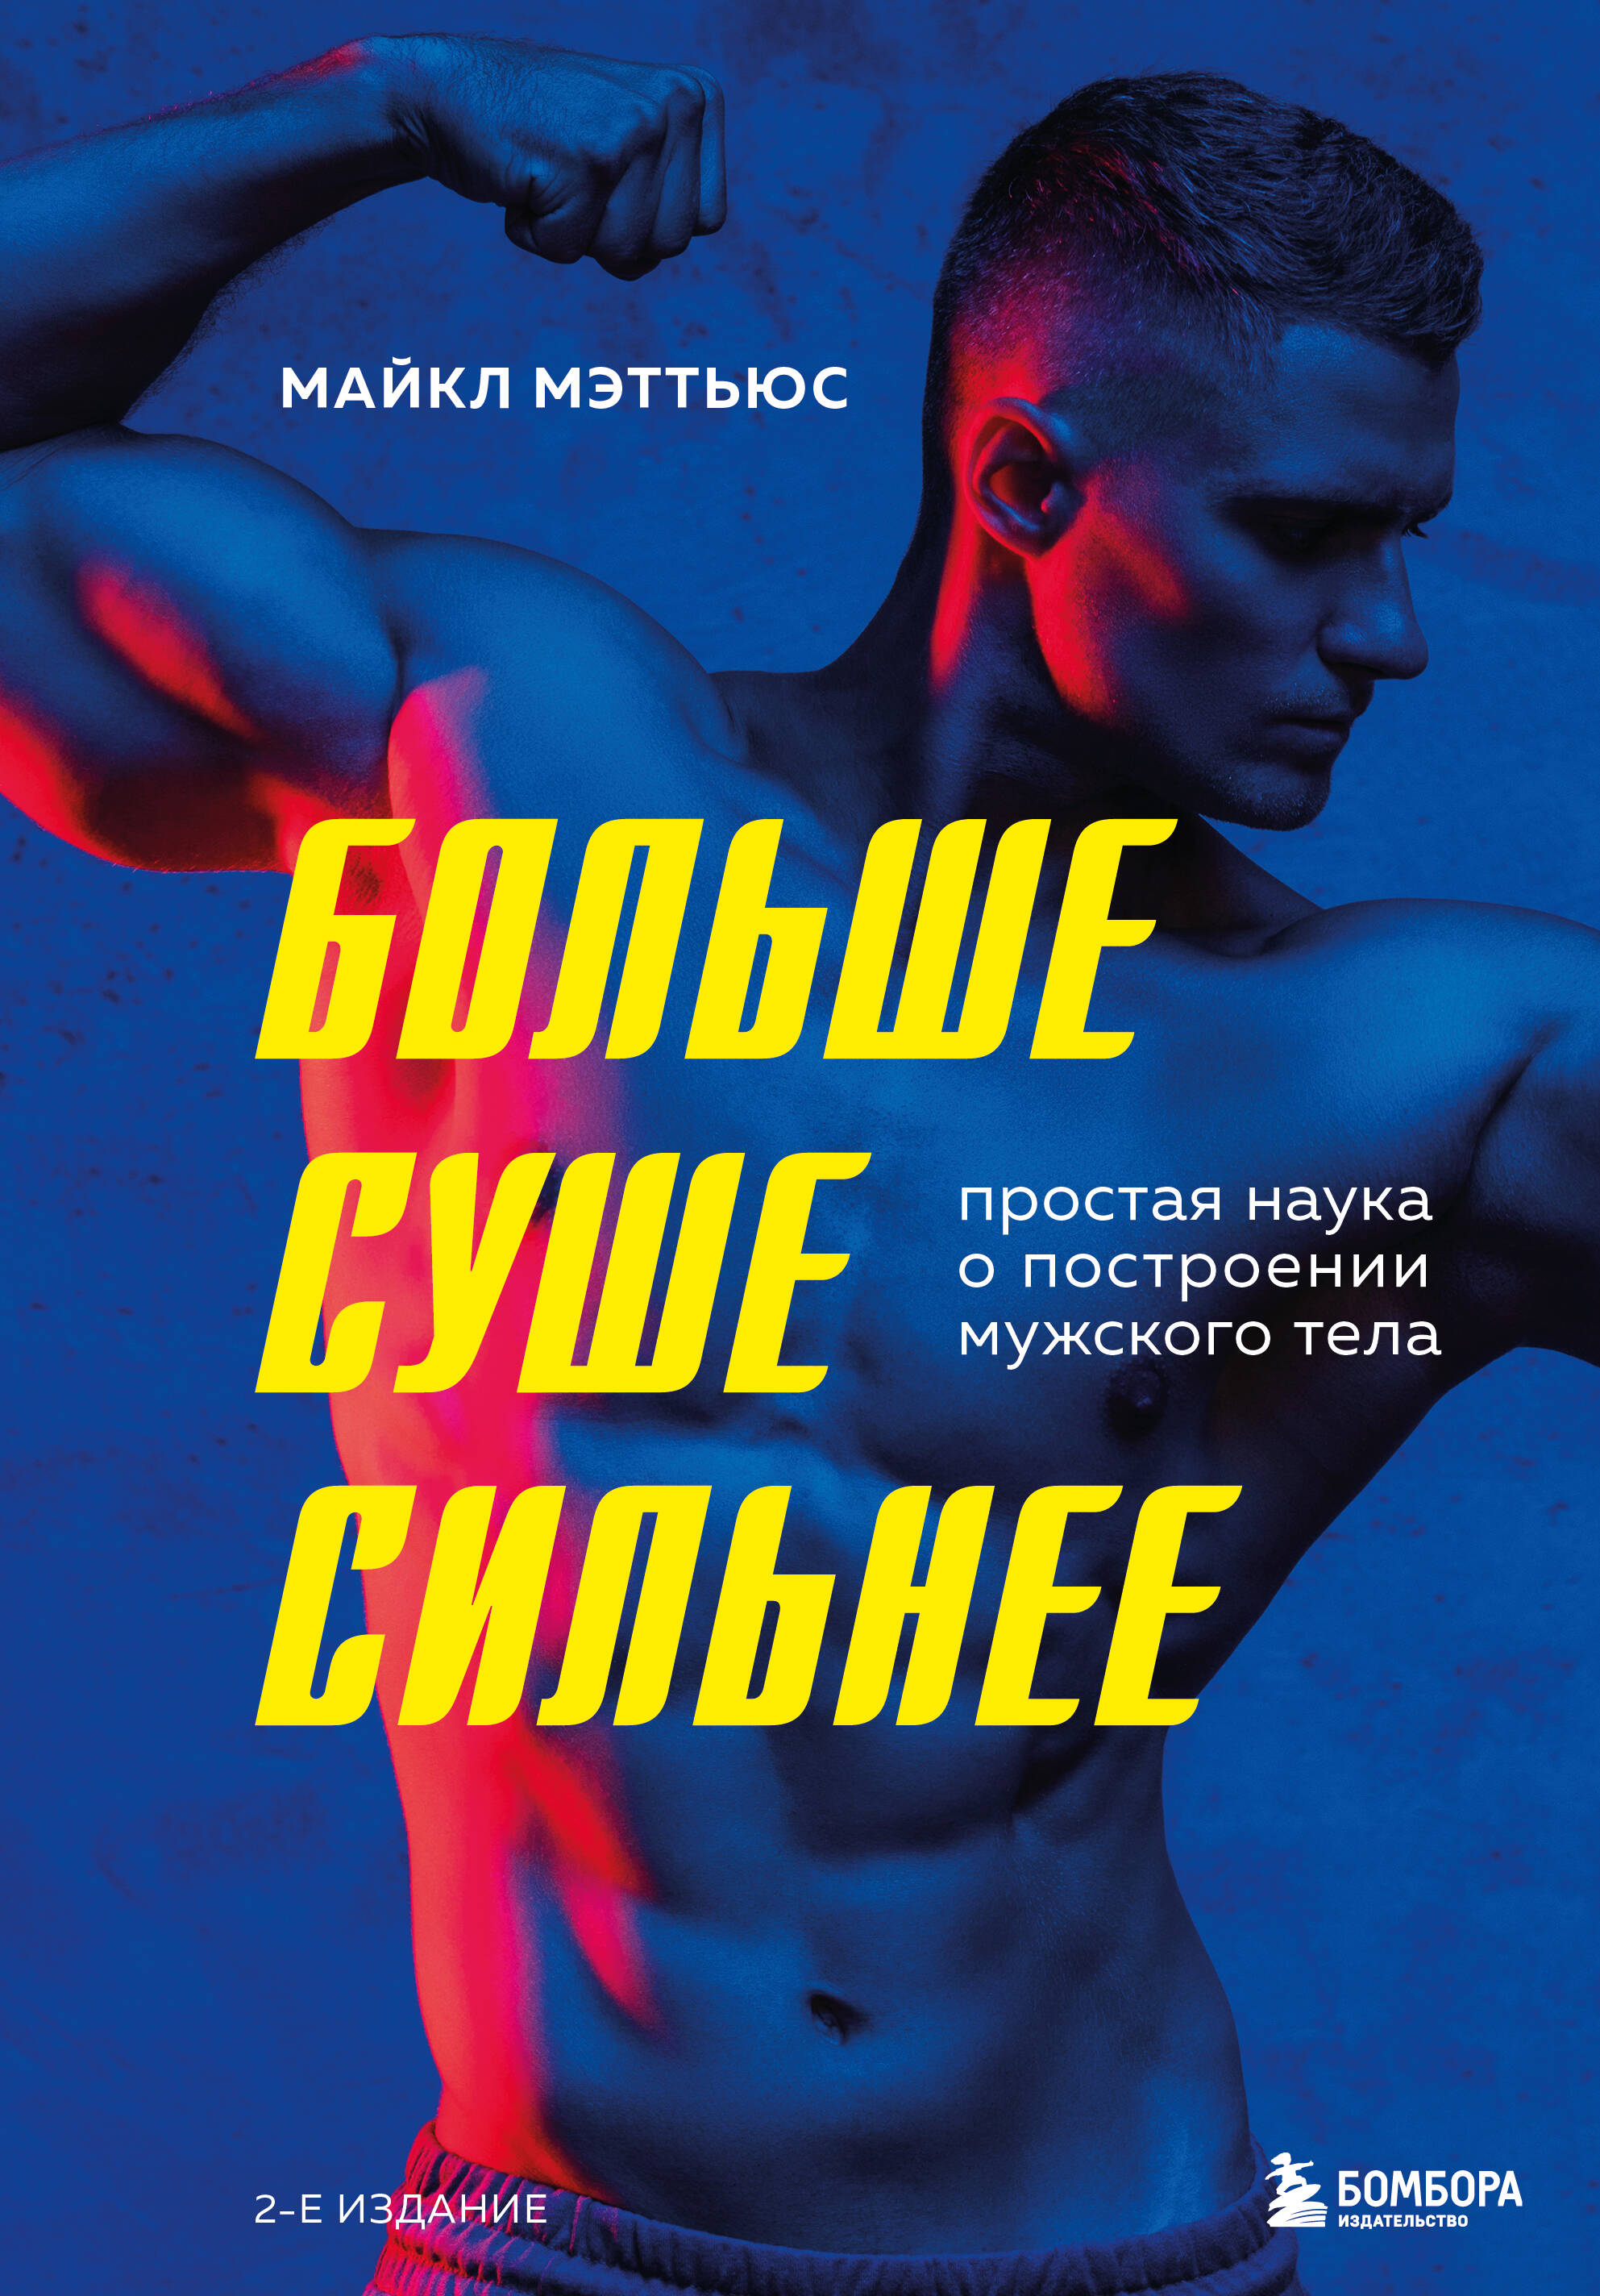 Больше. Суше. Сильнее. Простая наука о построении мужского тела (2-е изд.) мэттьюс майкл тоньше суше сильнее